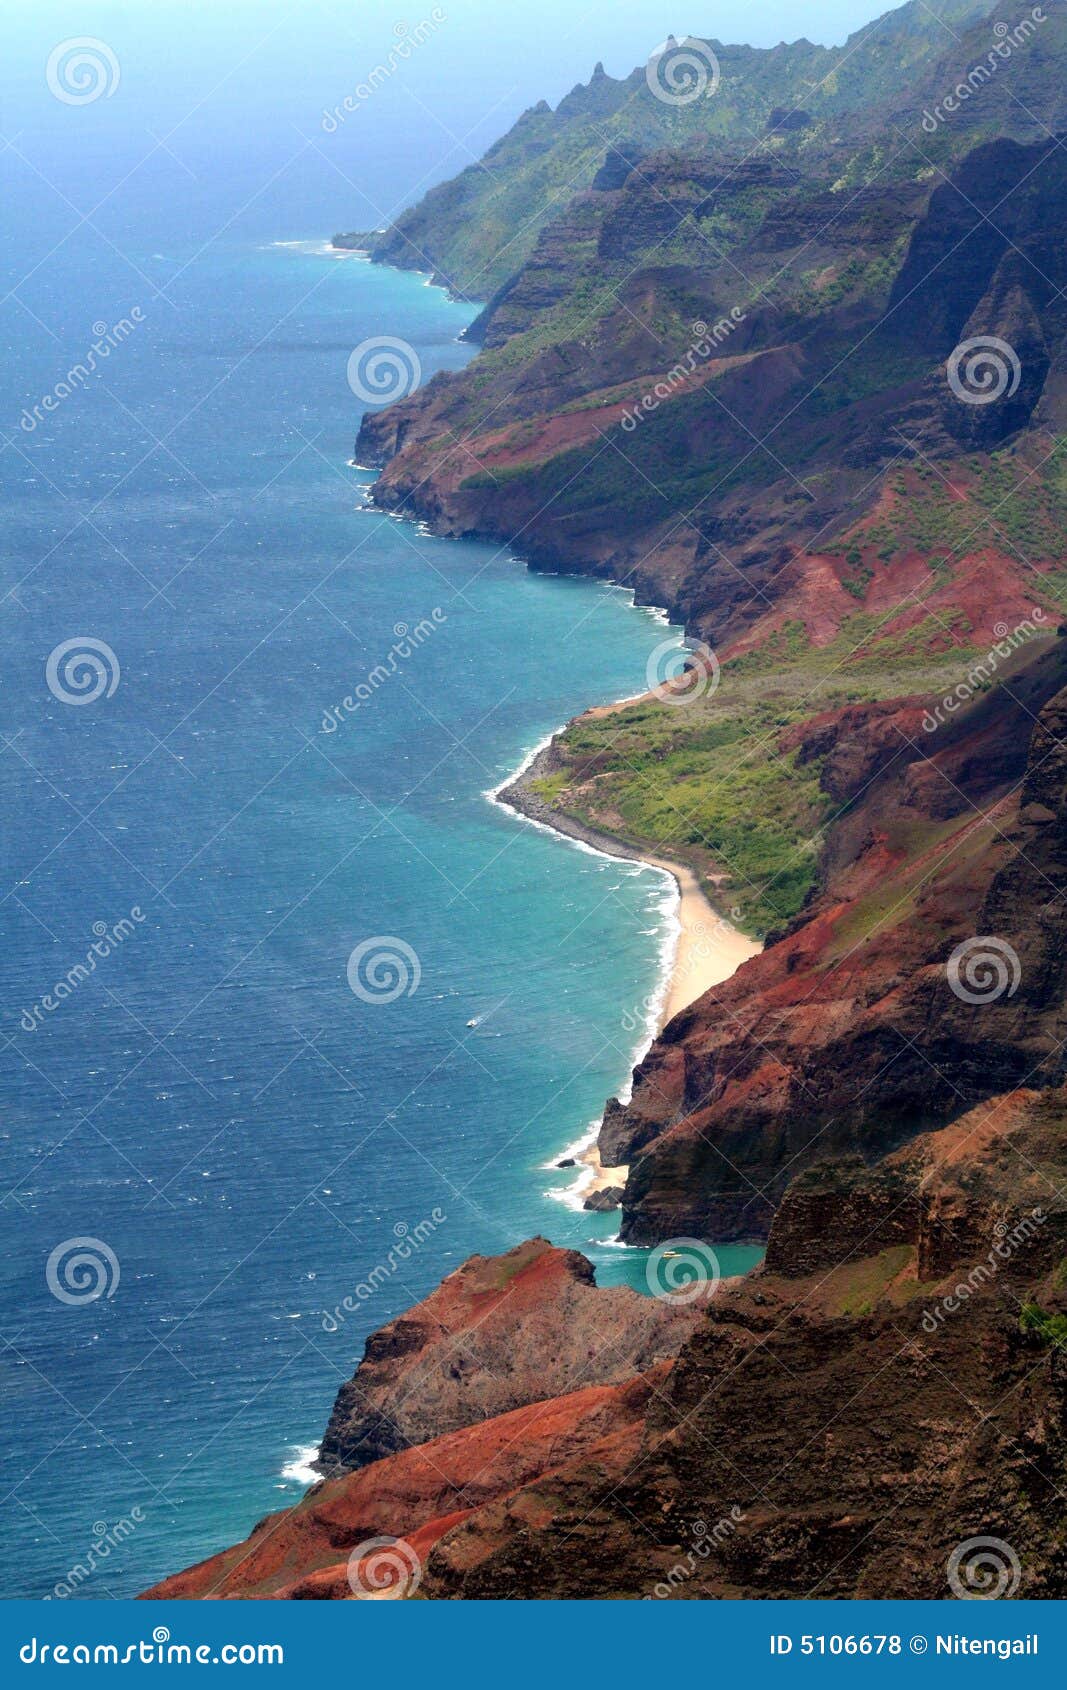 cliffs of kauai